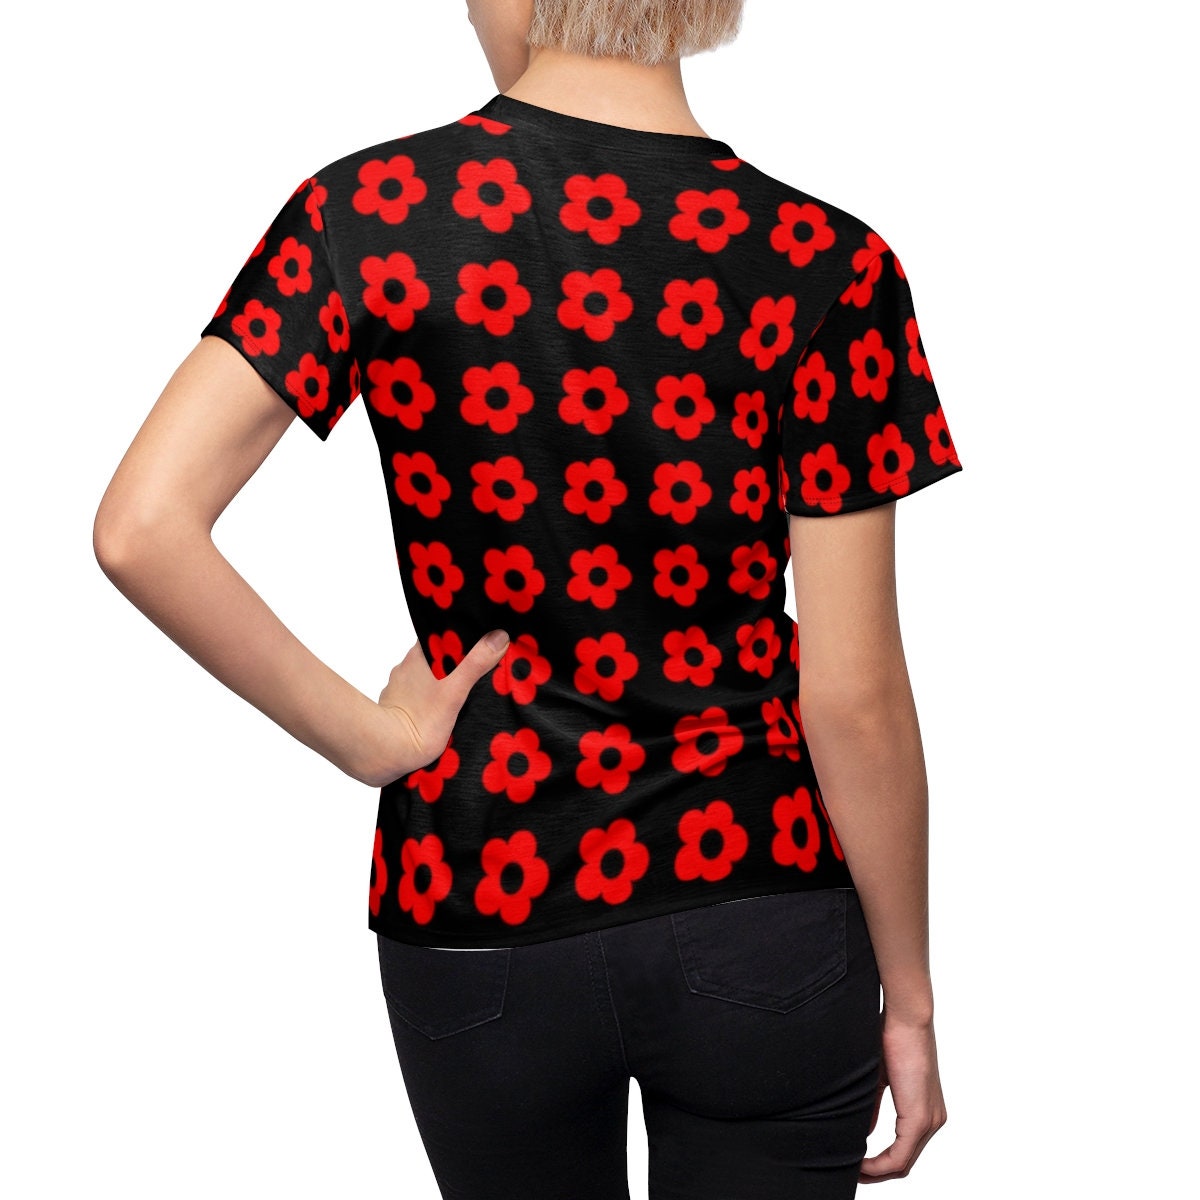 Retro-Top, Mod-Top, 60er-Jahre-Tops, Vintage-Stil-Top, Mod-60er-Top, schwarz-rotes Top, Vintage-T-Shirt, Vintage-Blumen-Top, Vintage-Blumen-Top